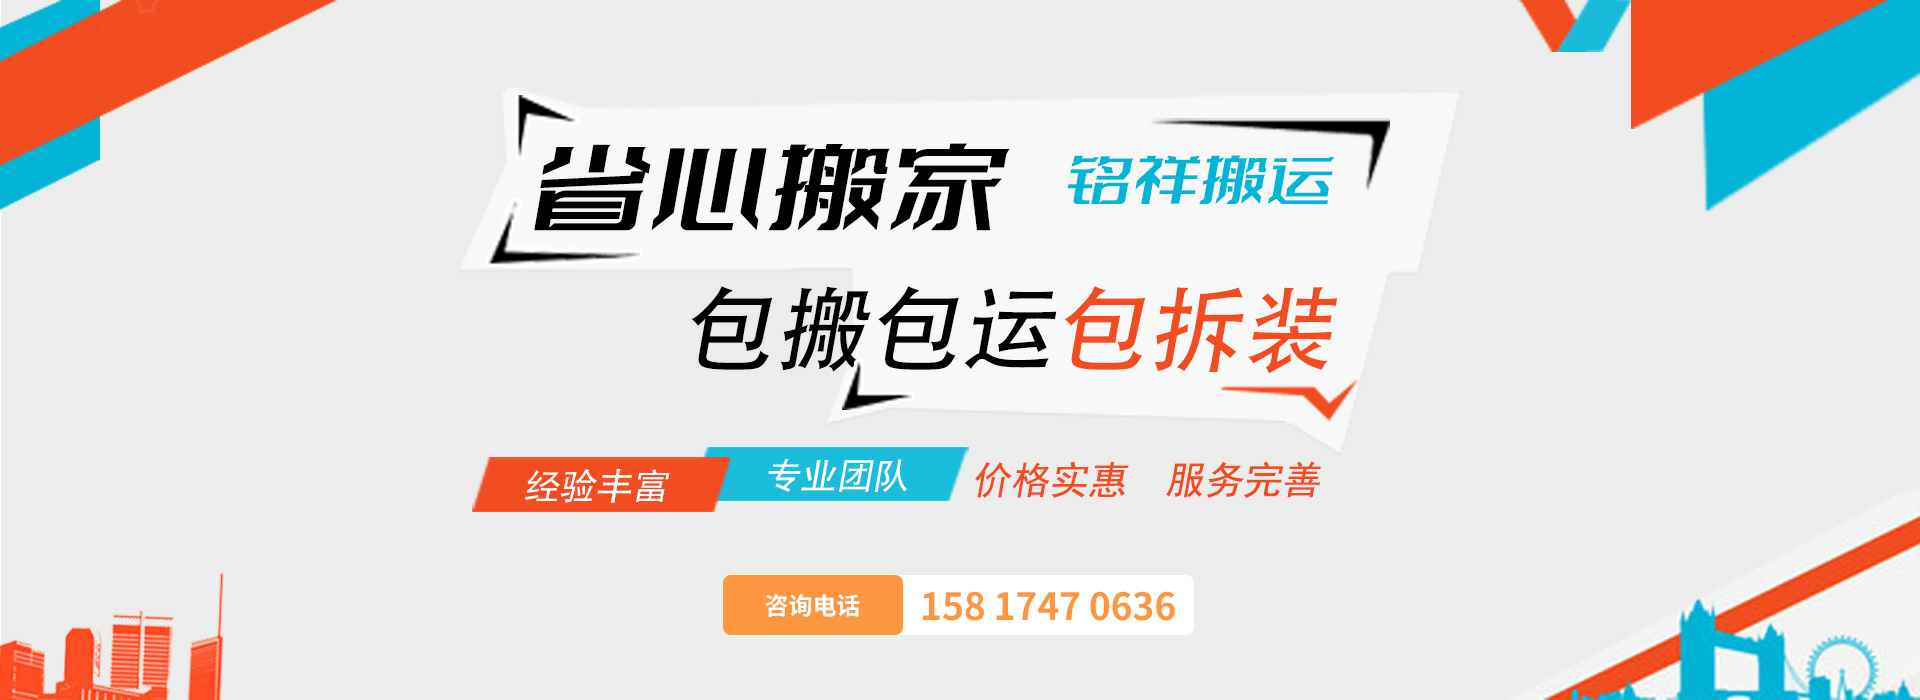 皇冠游戏官方网站(中国)有限公司官网包搬包运包拆装